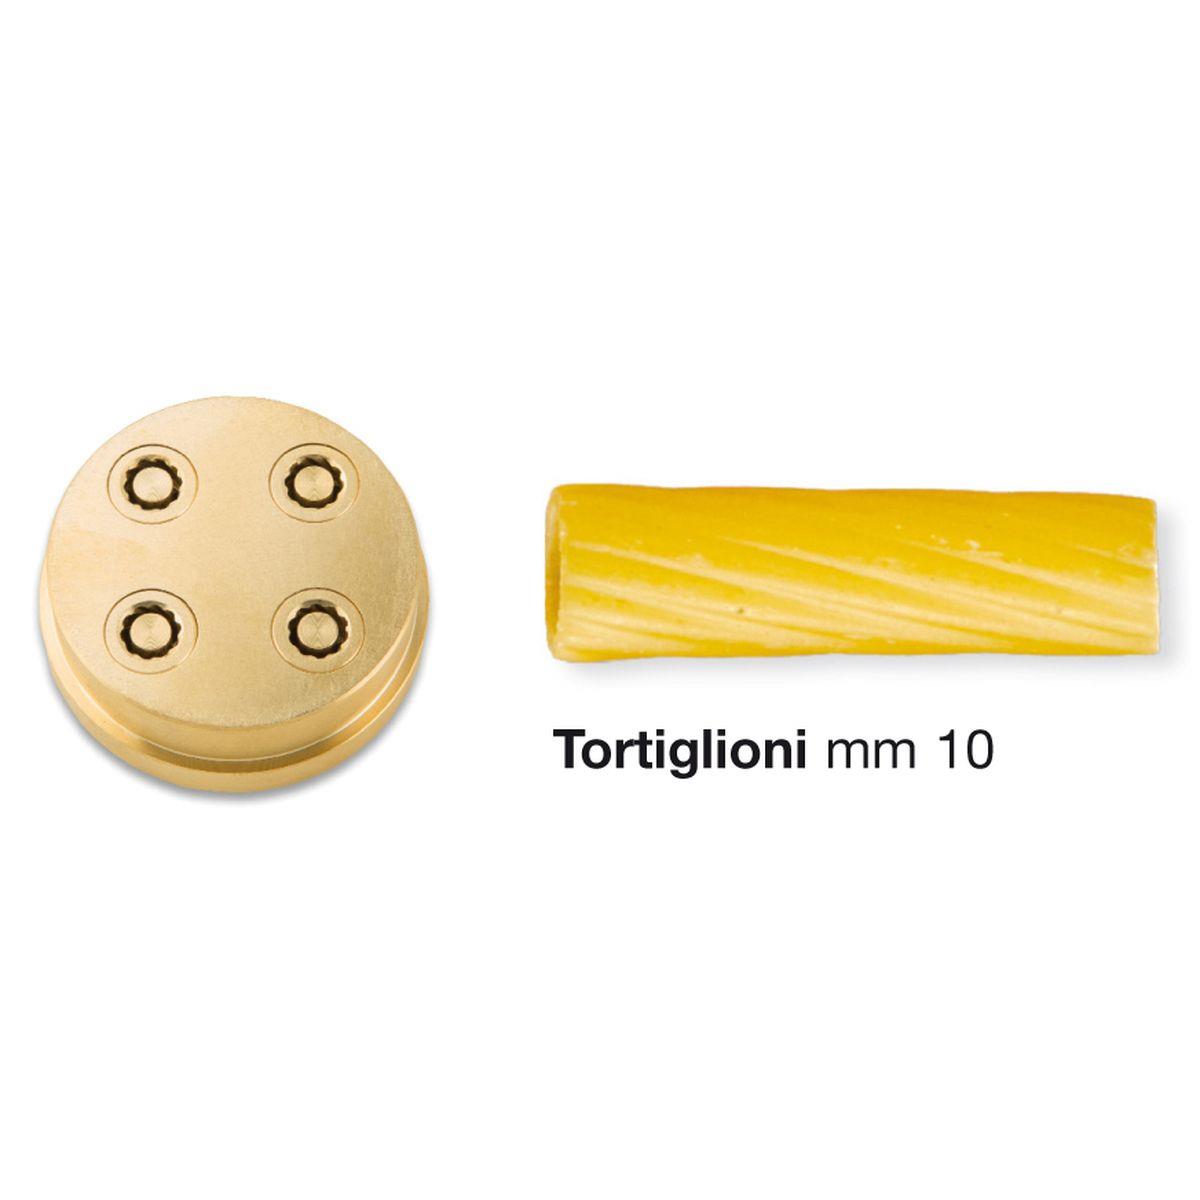 photo bronze die 285 for tortiglioni for home chef pasta machine